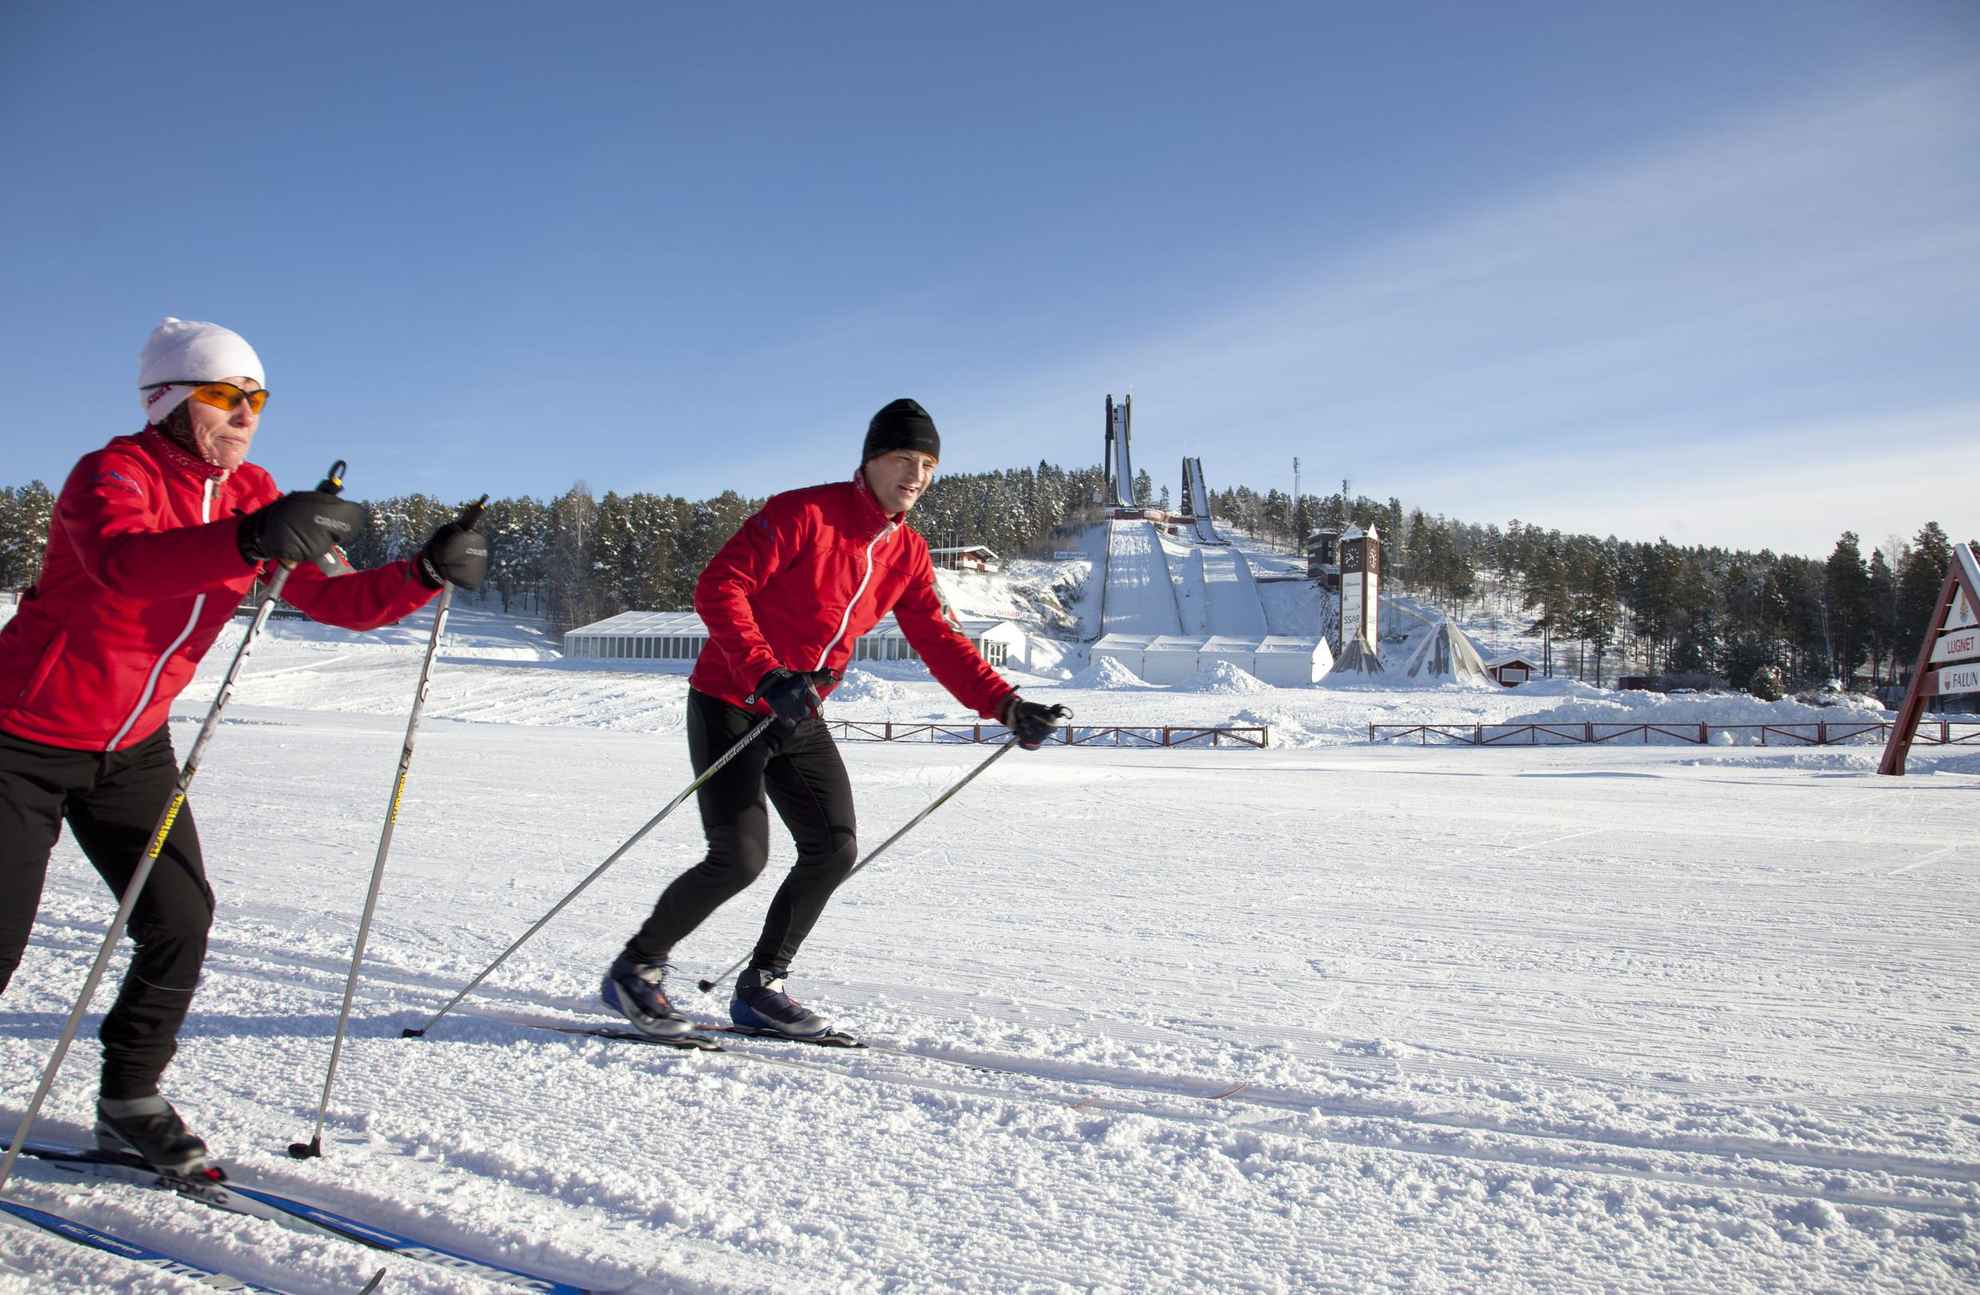 Deux personnes en veste rouge font du ski de fond sur des pistes préparées.